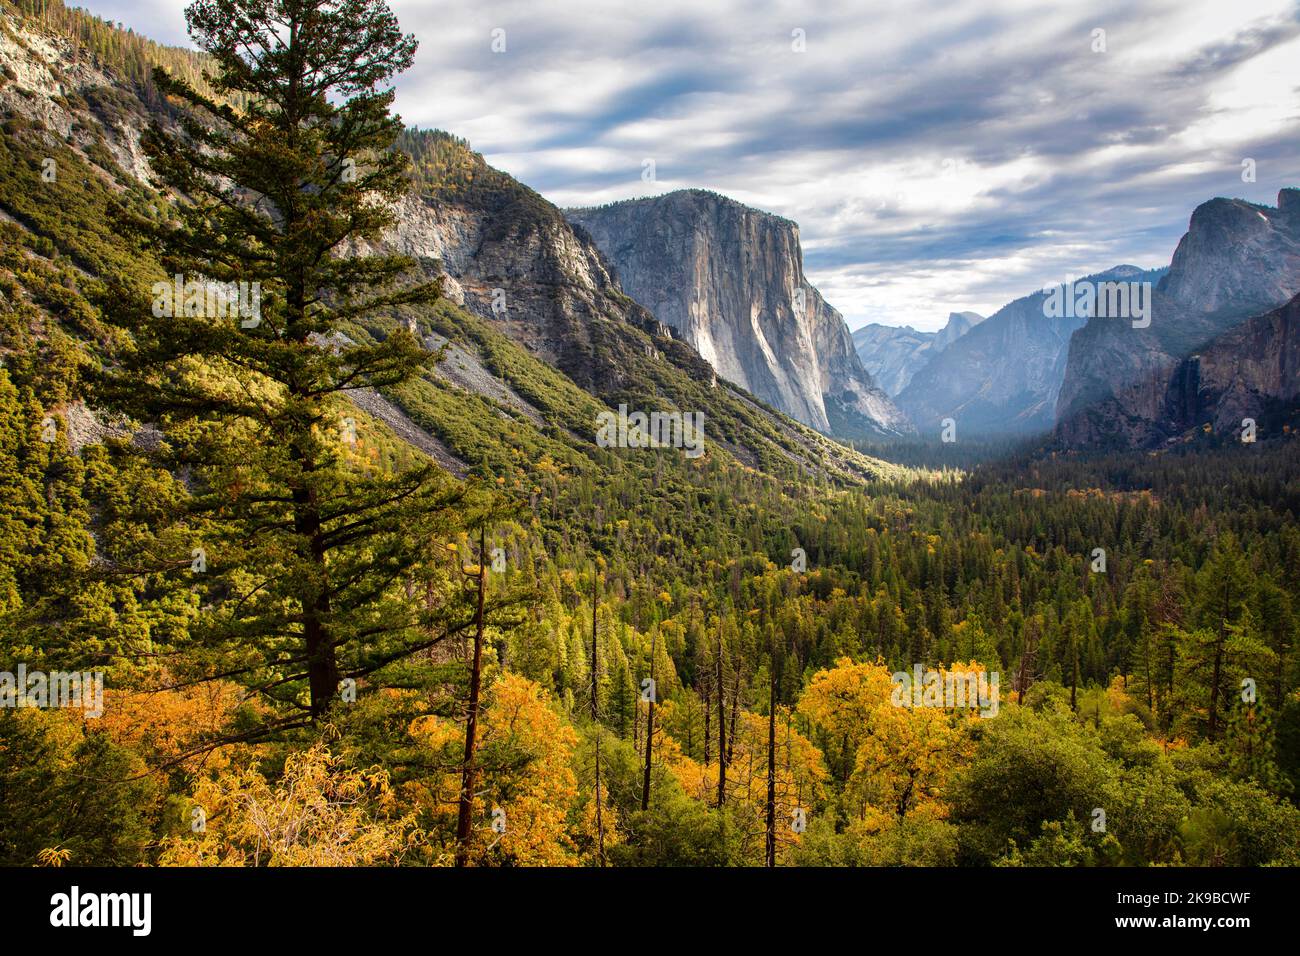 Yosemite Valley affiche ses couleurs d'automne avant l'arrivée de l'hiver. Parc national de Yosemite, Californie. Banque D'Images